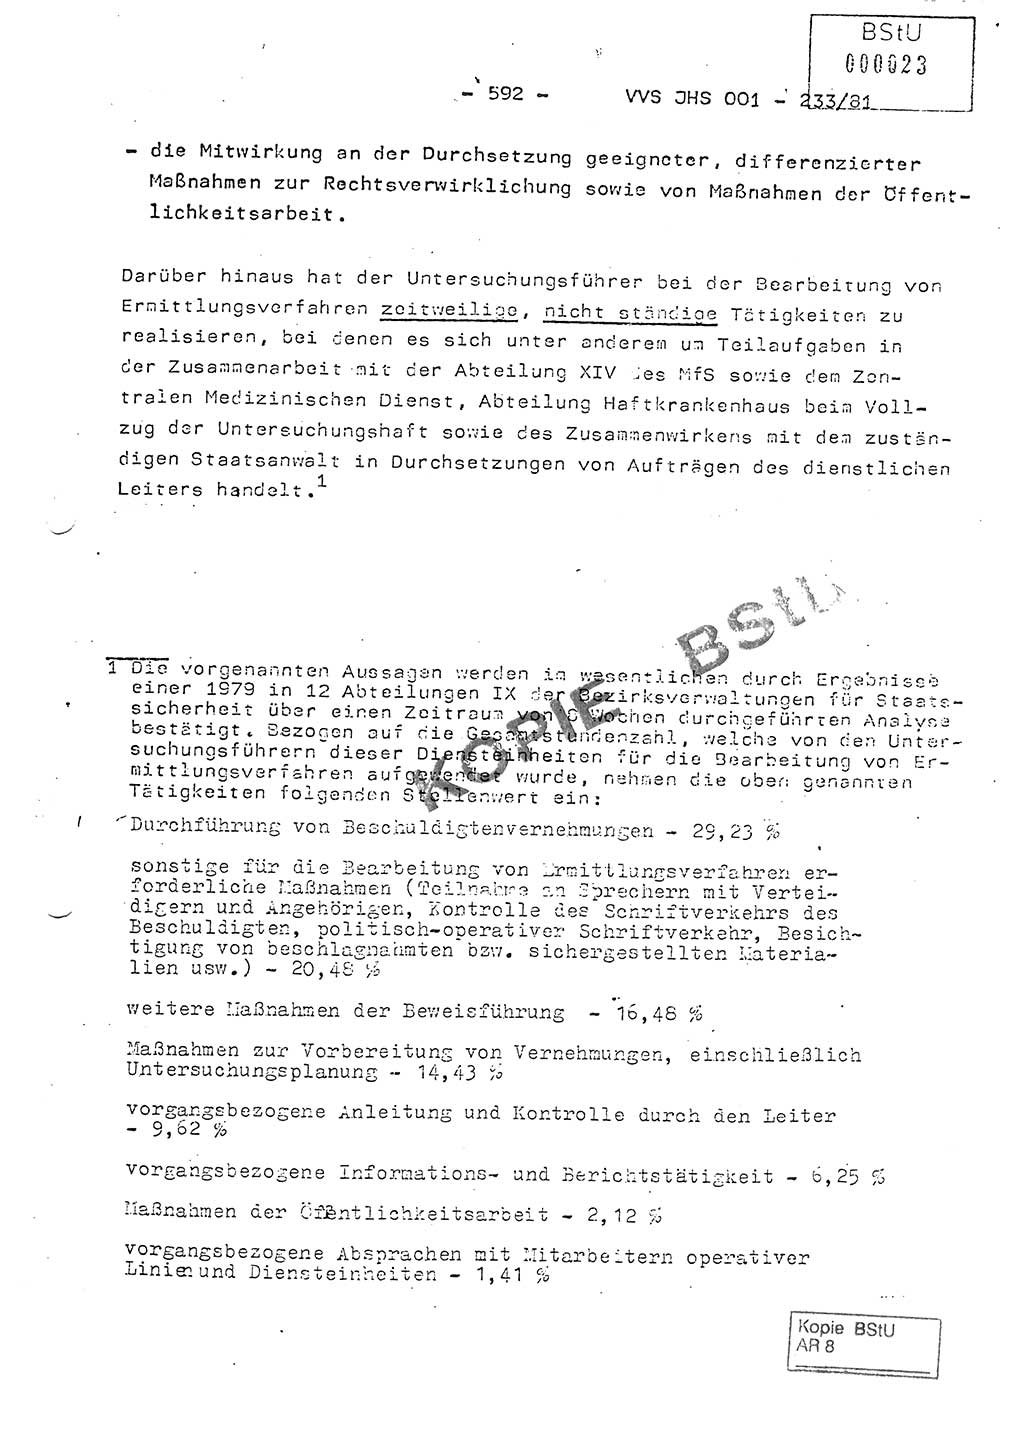 Dissertation Oberstleutnant Horst Zank (JHS), Oberstleutnant Dr. Karl-Heinz Knoblauch (JHS), Oberstleutnant Gustav-Adolf Kowalewski (HA Ⅸ), Oberstleutnant Wolfgang Plötner (HA Ⅸ), Ministerium für Staatssicherheit (MfS) [Deutsche Demokratische Republik (DDR)], Juristische Hochschule (JHS), Vertrauliche Verschlußsache (VVS) o001-233/81, Potsdam 1981, Blatt 592 (Diss. MfS DDR JHS VVS o001-233/81 1981, Bl. 592)